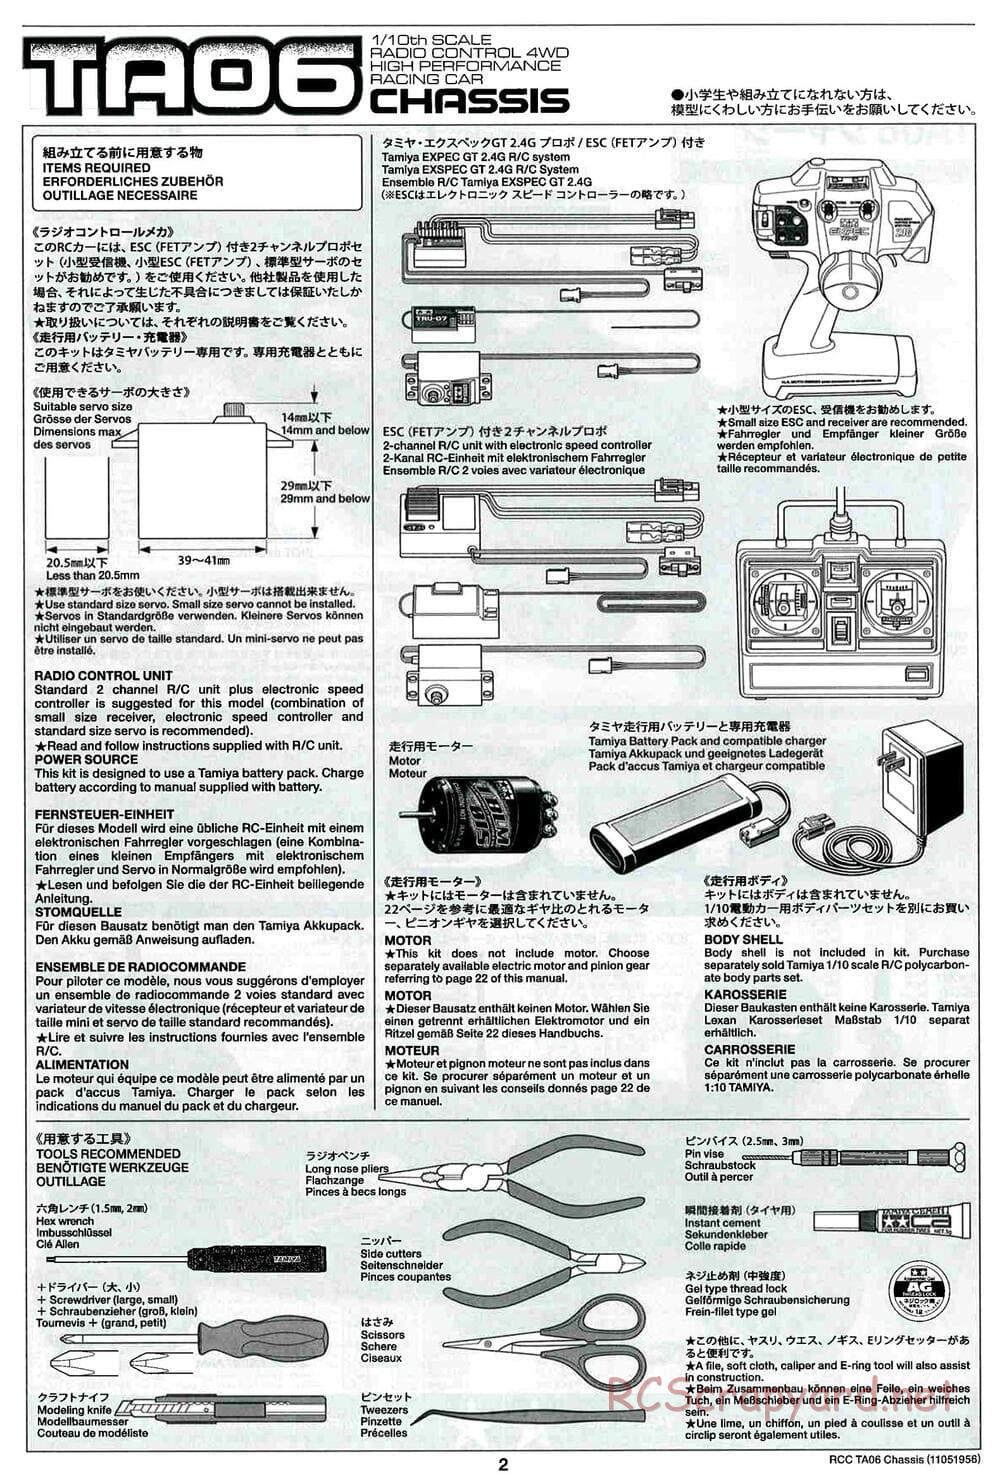 Tamiya - TA06 Chassis - Manual - Page 2